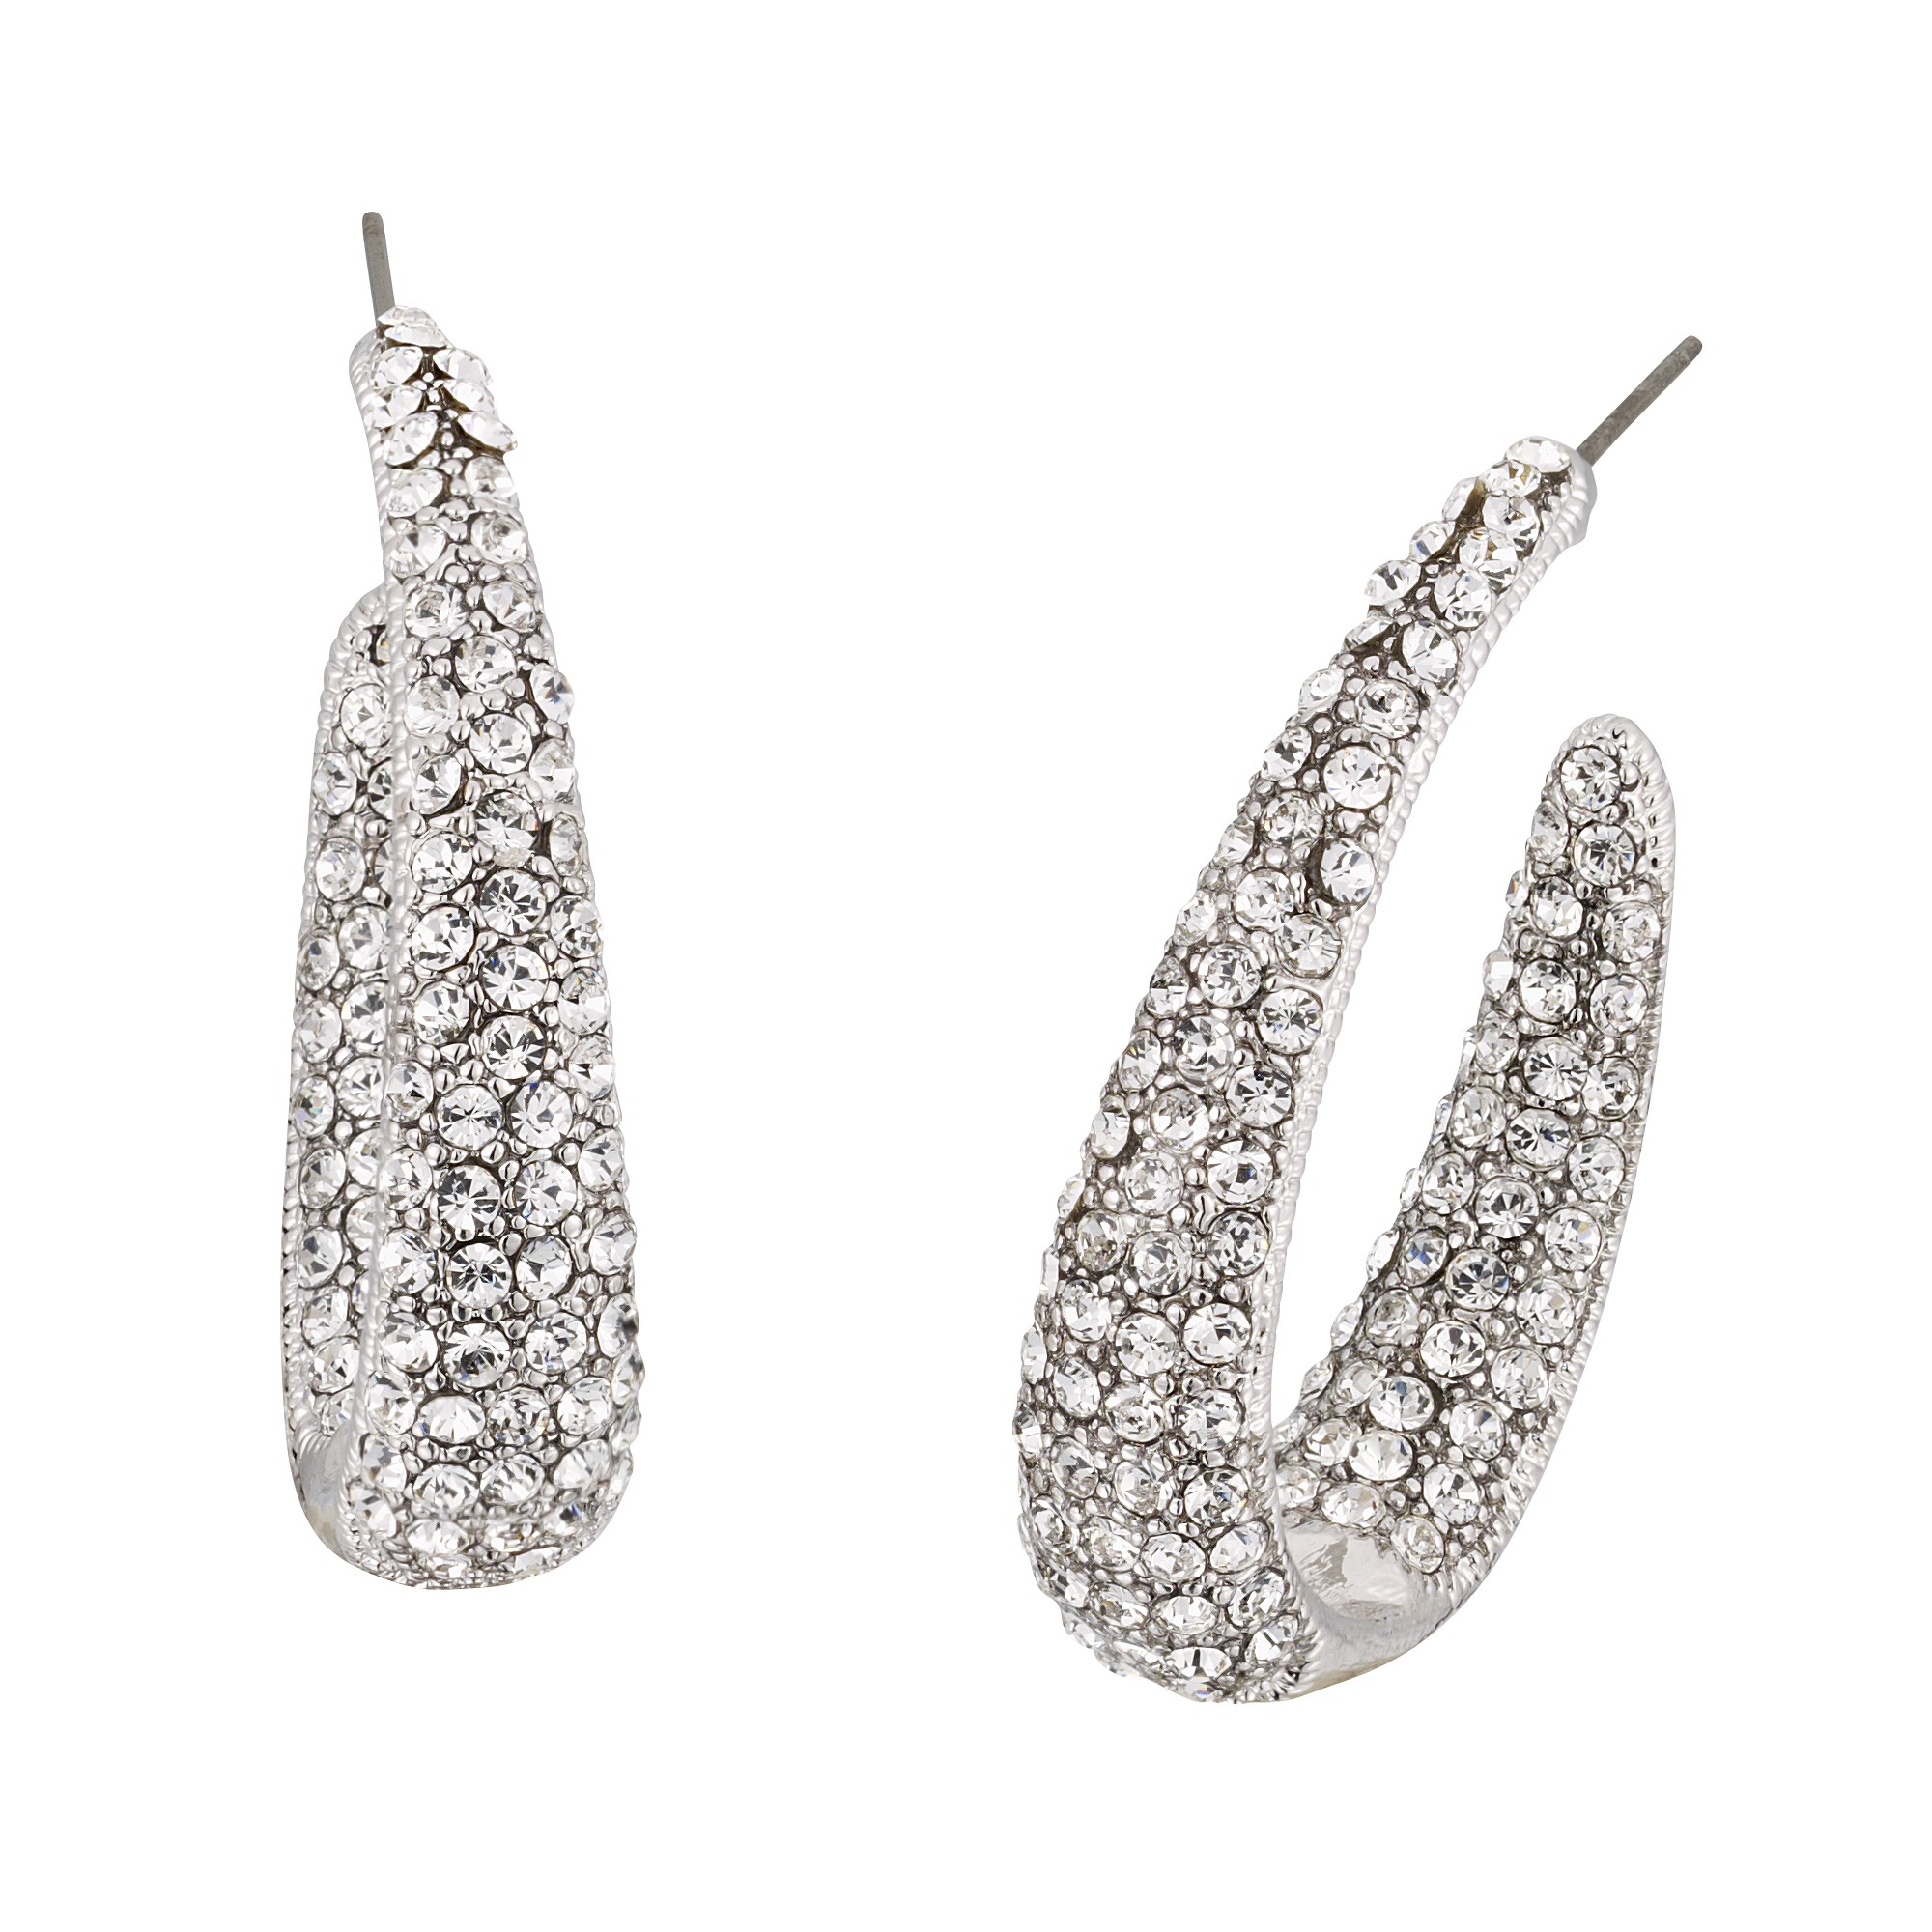 Swarovski Crystal Swarovski Crystal Large Hooped Earrings, 38mm Drop